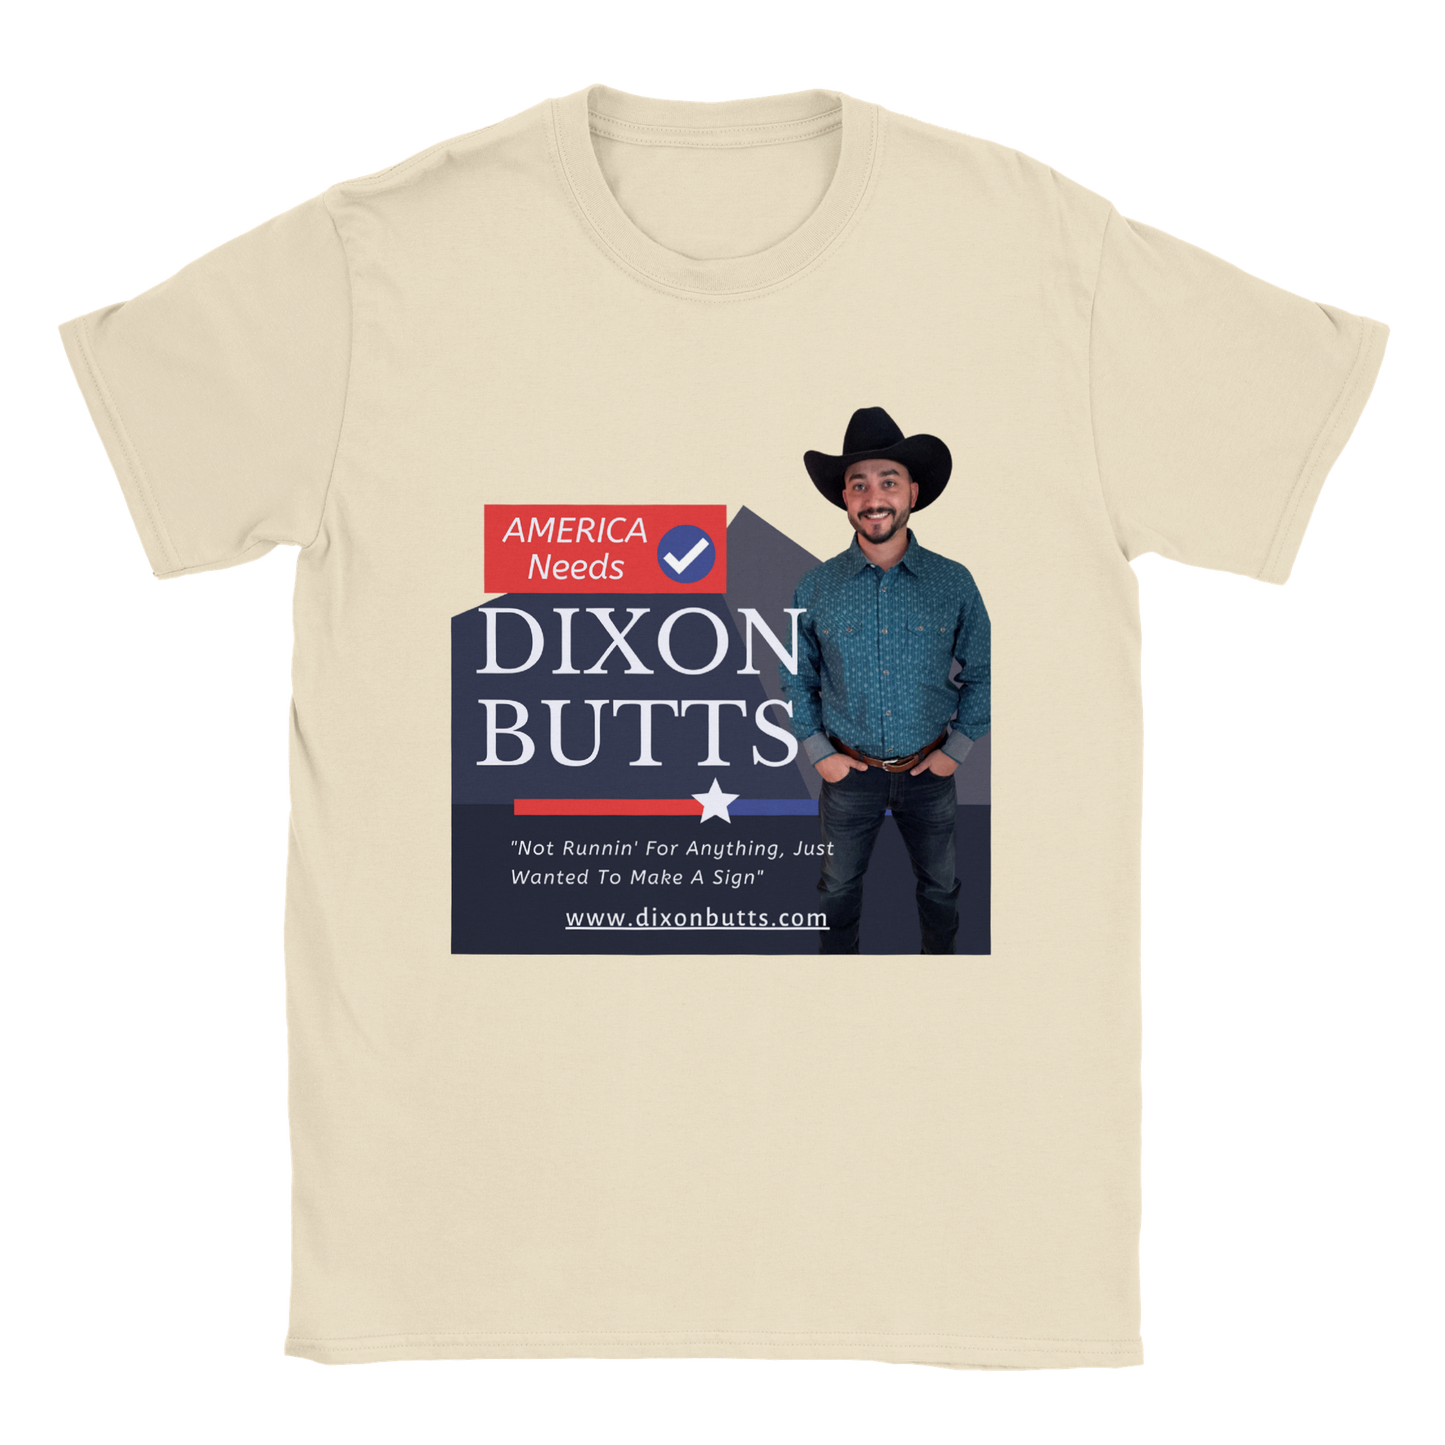 AMERICA NEEDS DIXON BUTTS - Crewneck Tee Shirt